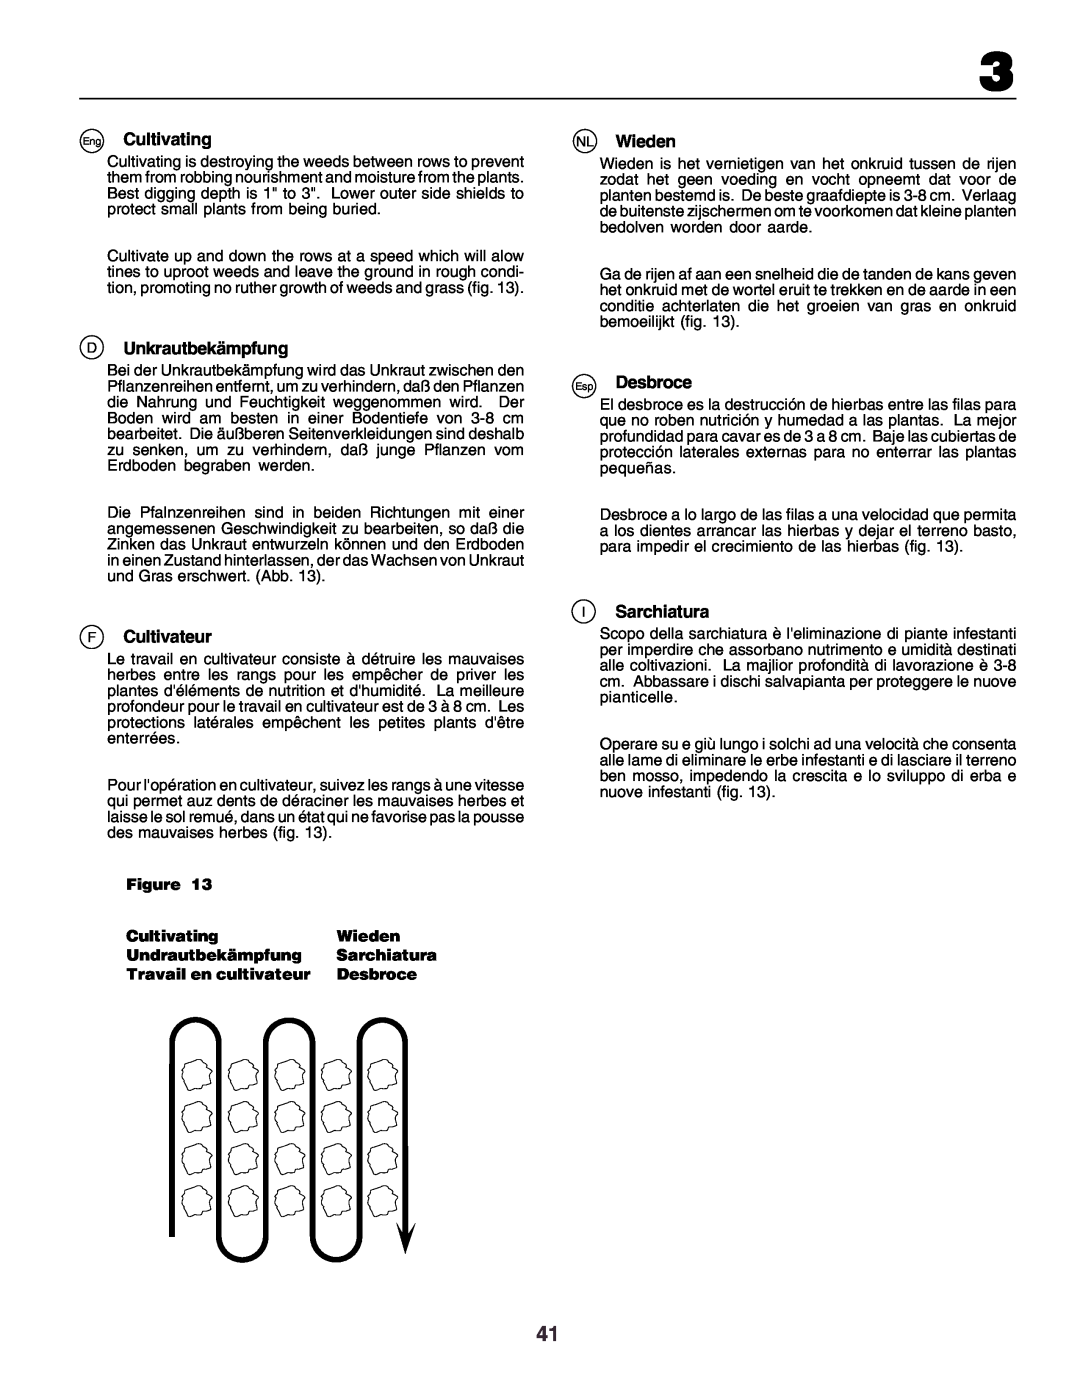 Husqvarna crt51 instruction manual Cultivating, Wieden, Undrautbekämpfung, Sarchiatura, Travail en cultivateur, Desbroce 